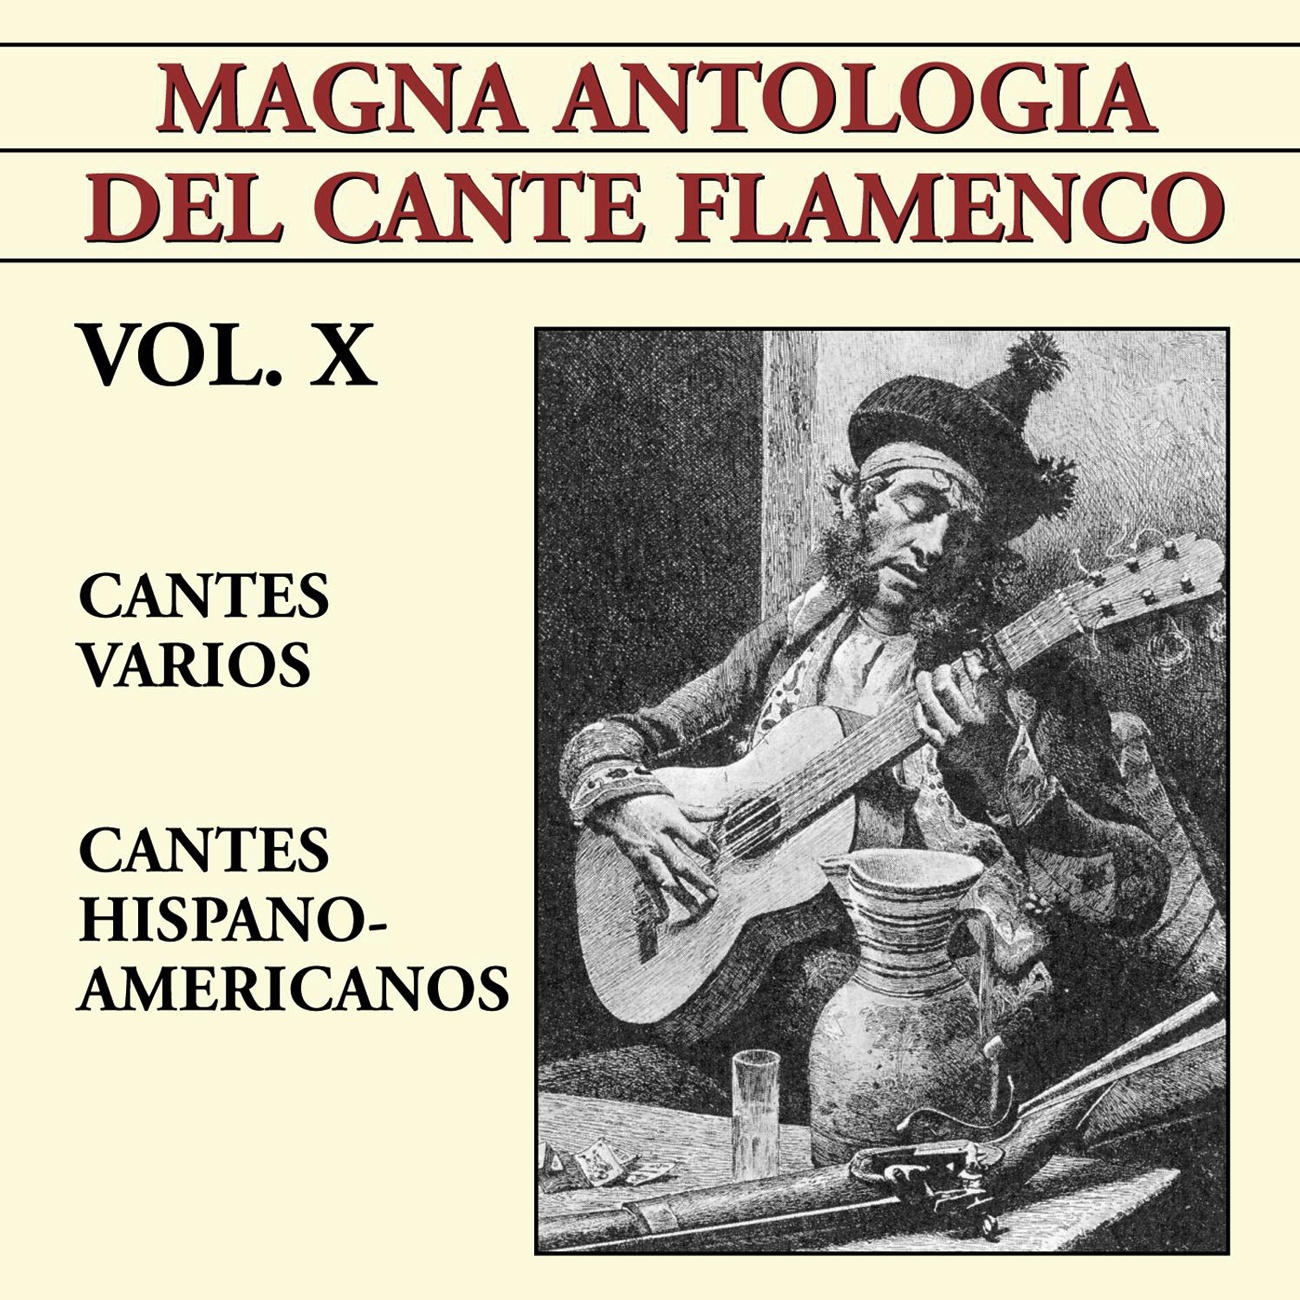 Magna Antologi a Del Cante Flamenco vol. X